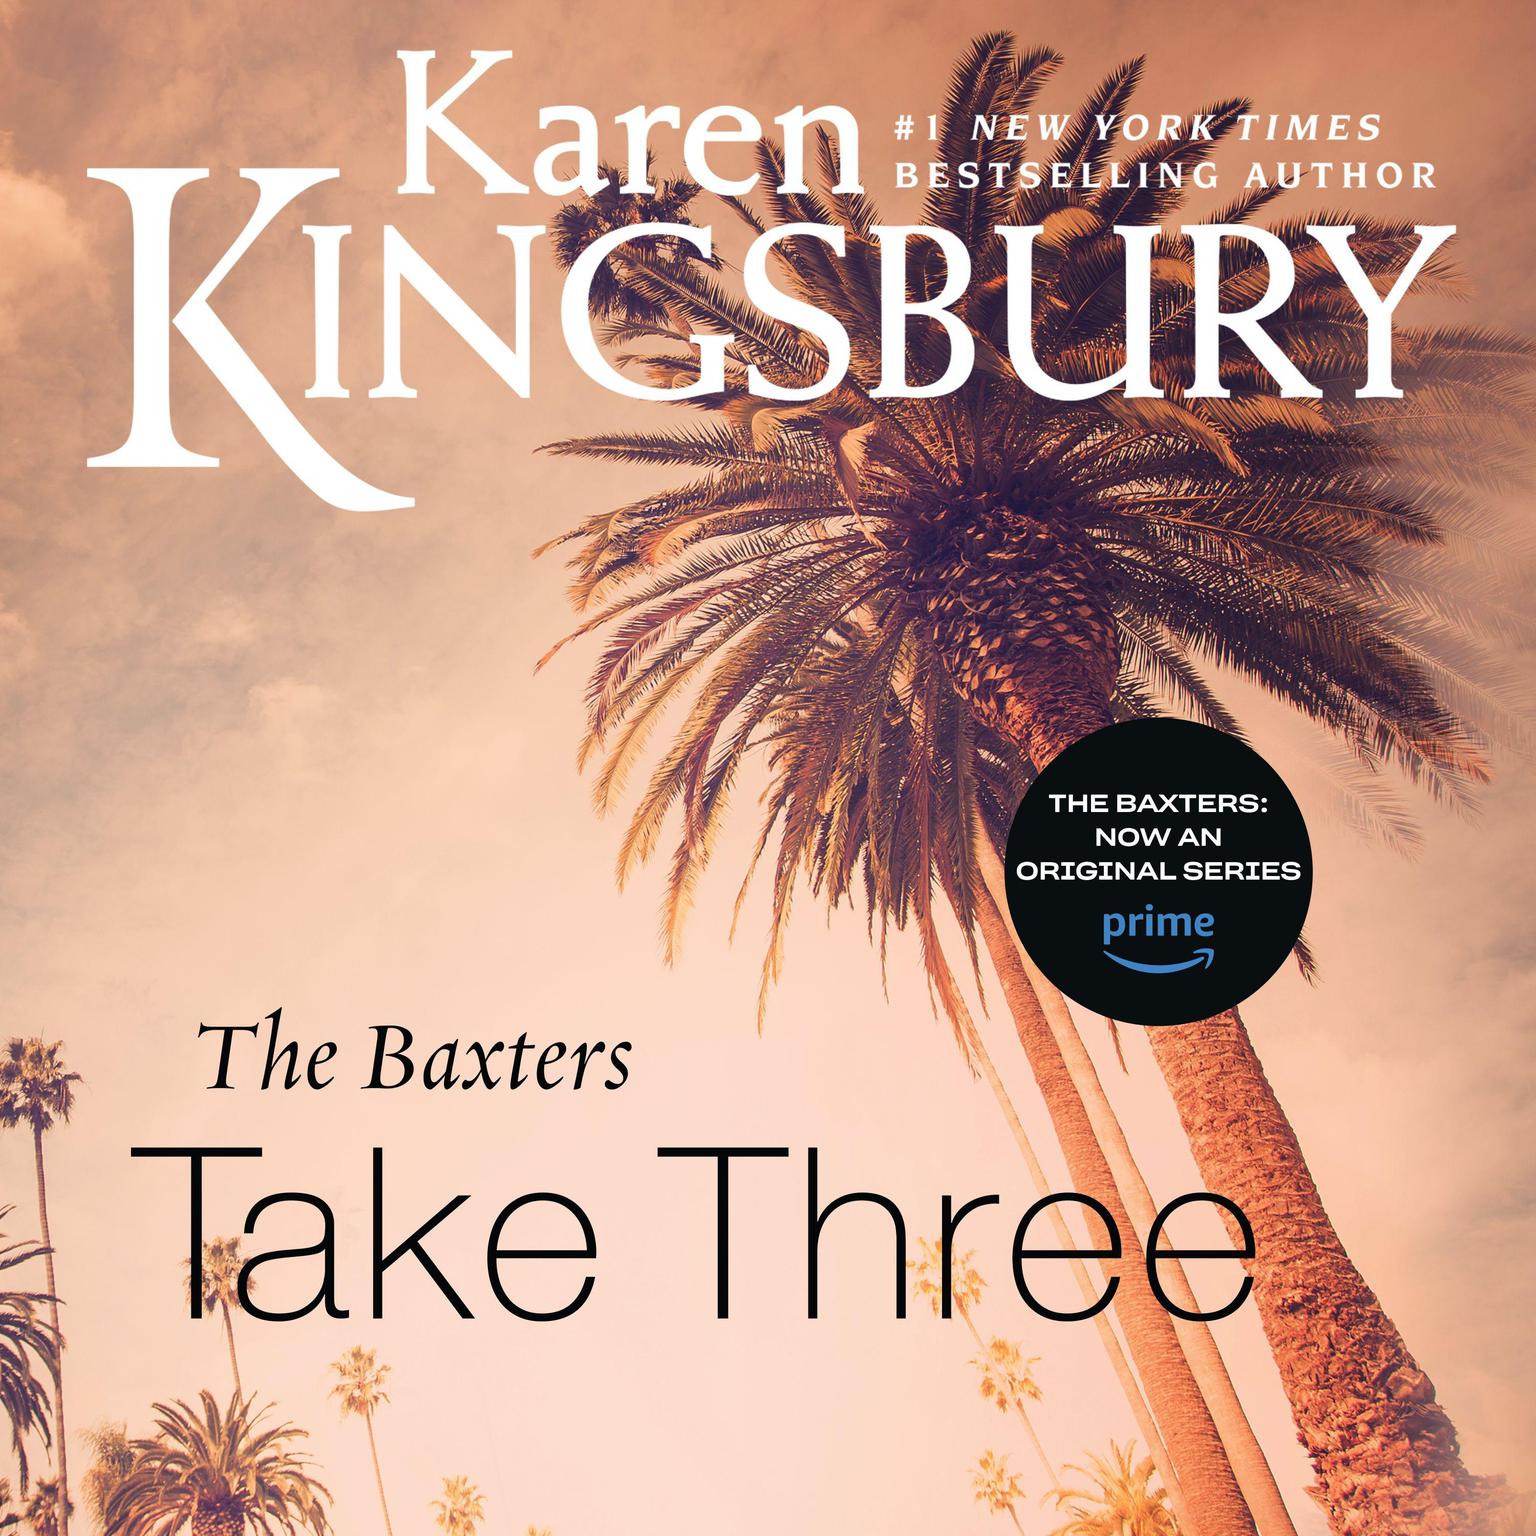 The Baxters Take Three Audiobook, by Karen Kingsbury